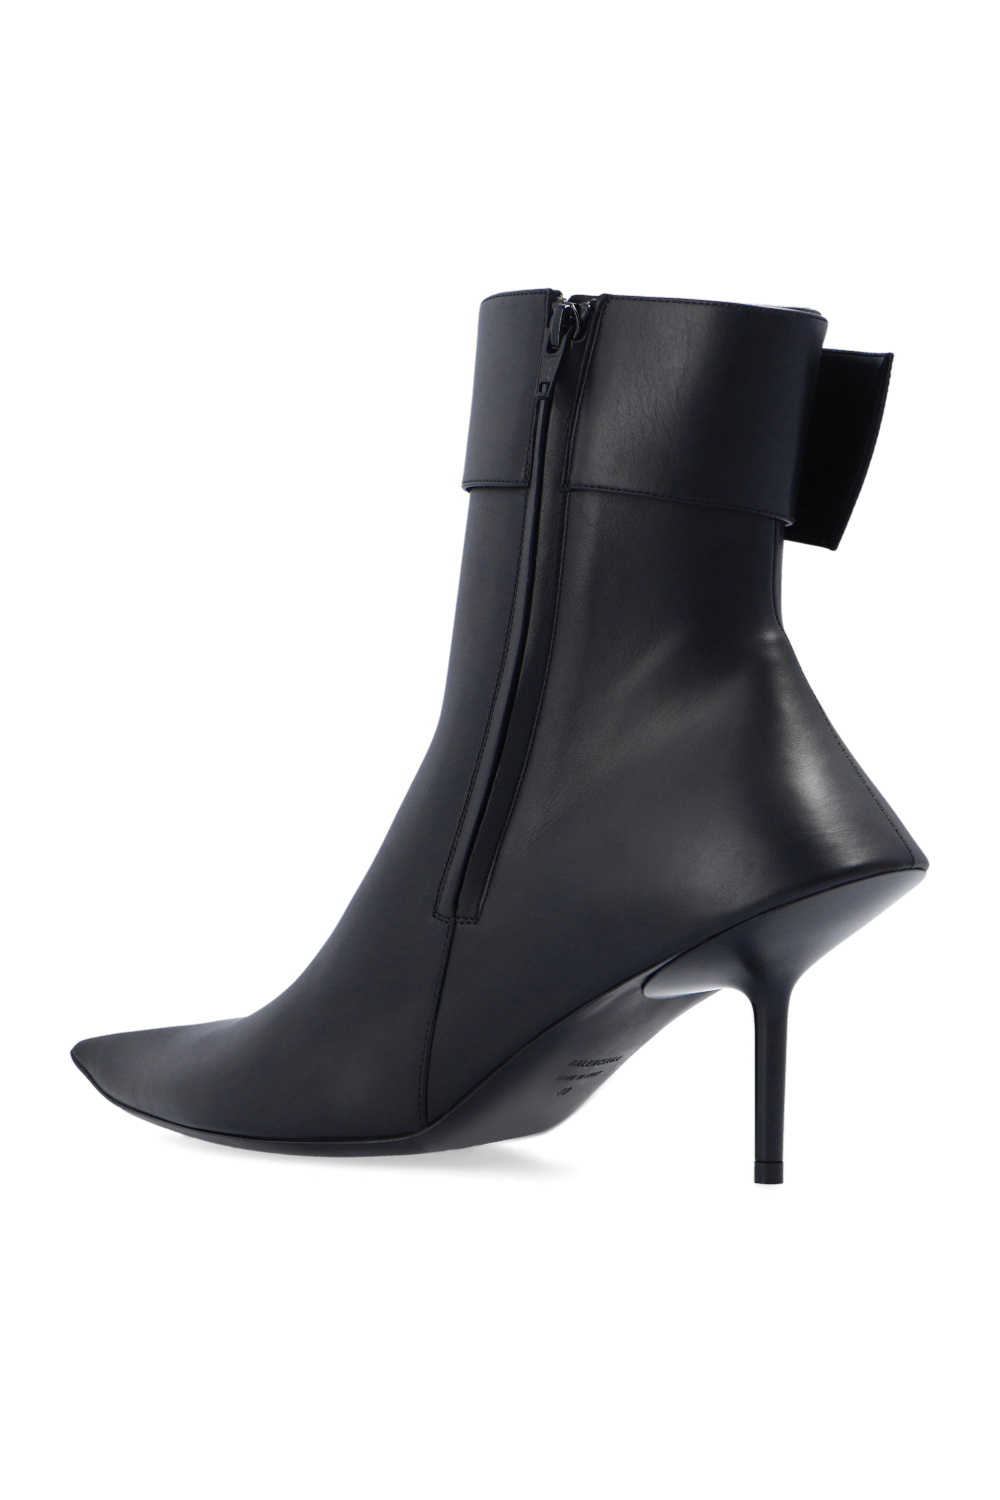 Balenciaga ‘Essex’ heeled boots